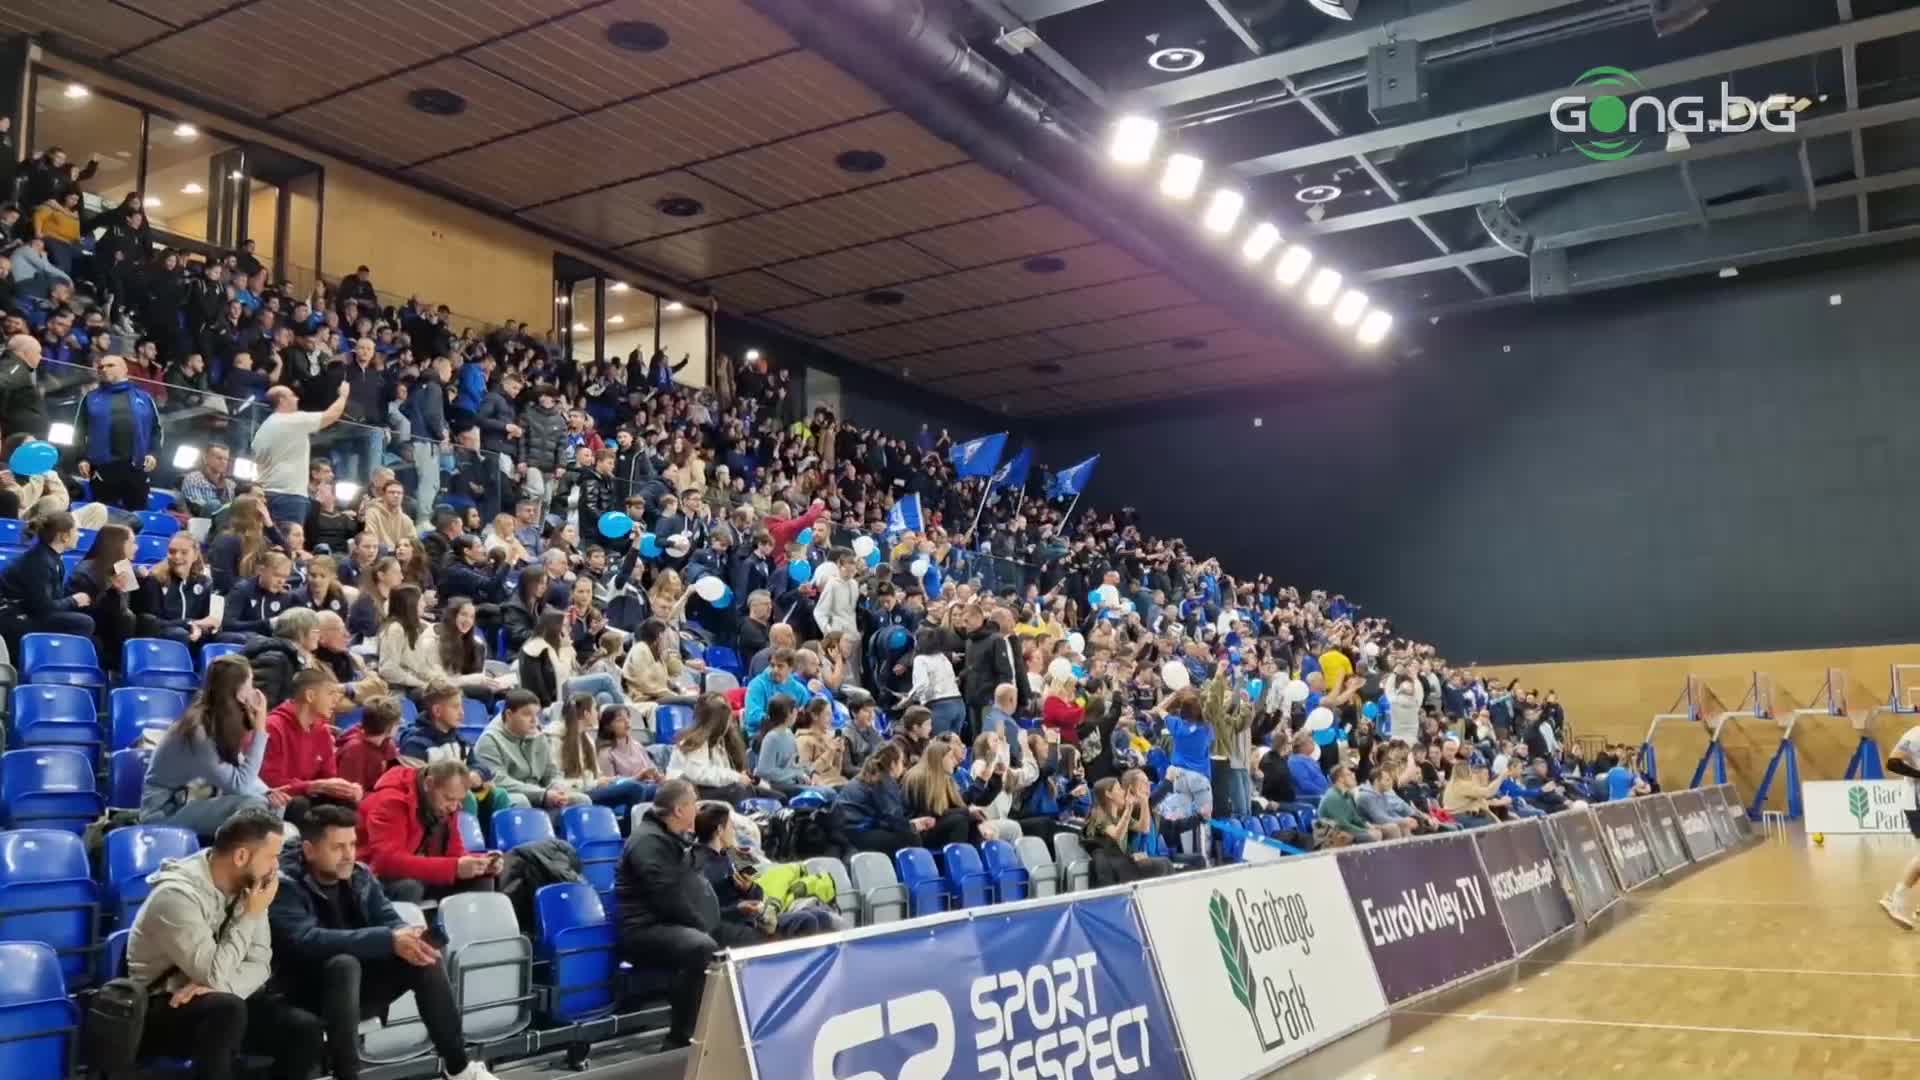 "Сините" фенове се забавляват преди Левски - Монца